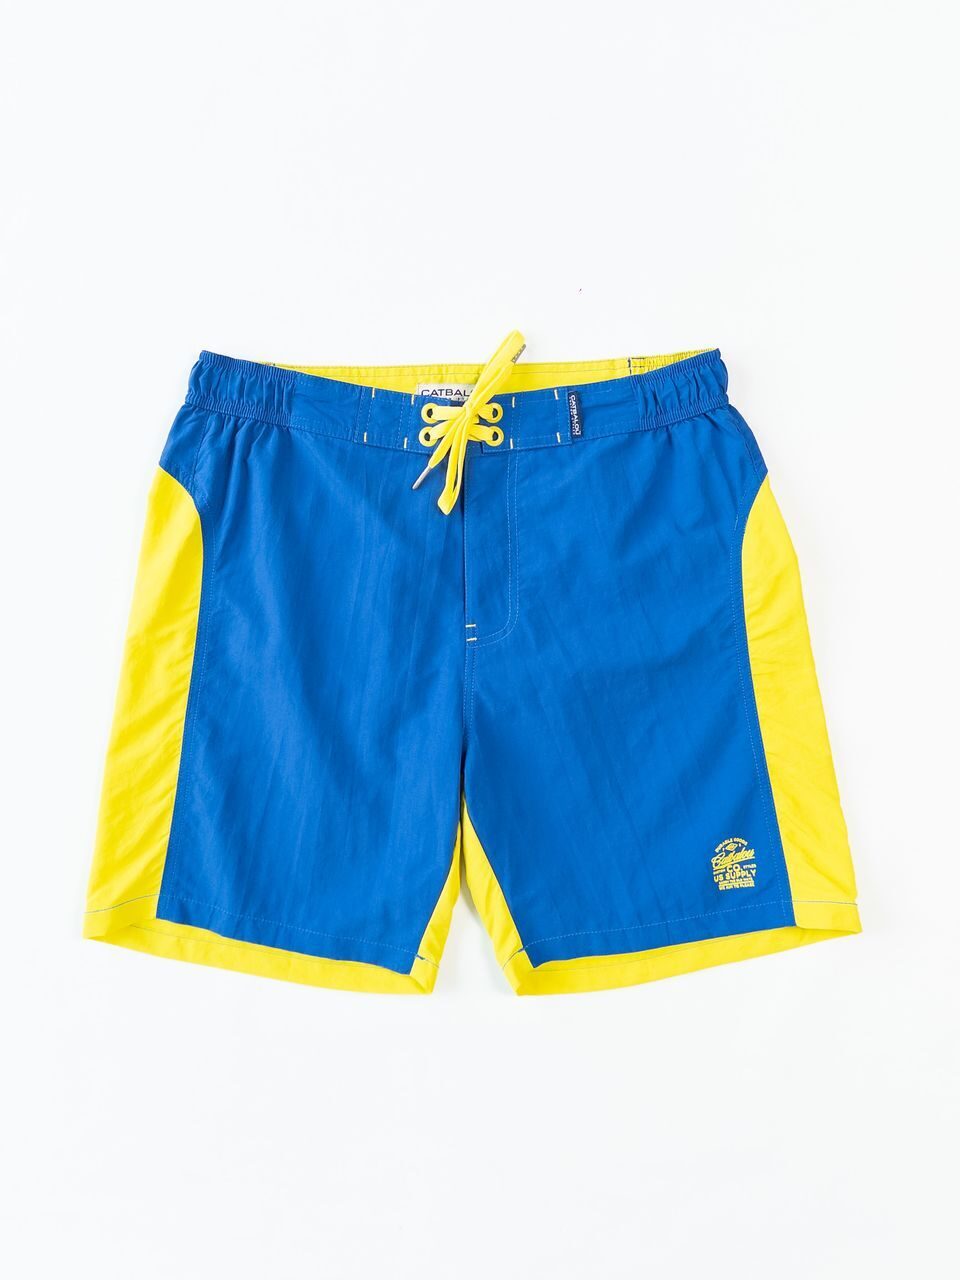 Шорты пляжные мужские цвет синий/желтый размер M Catbalou